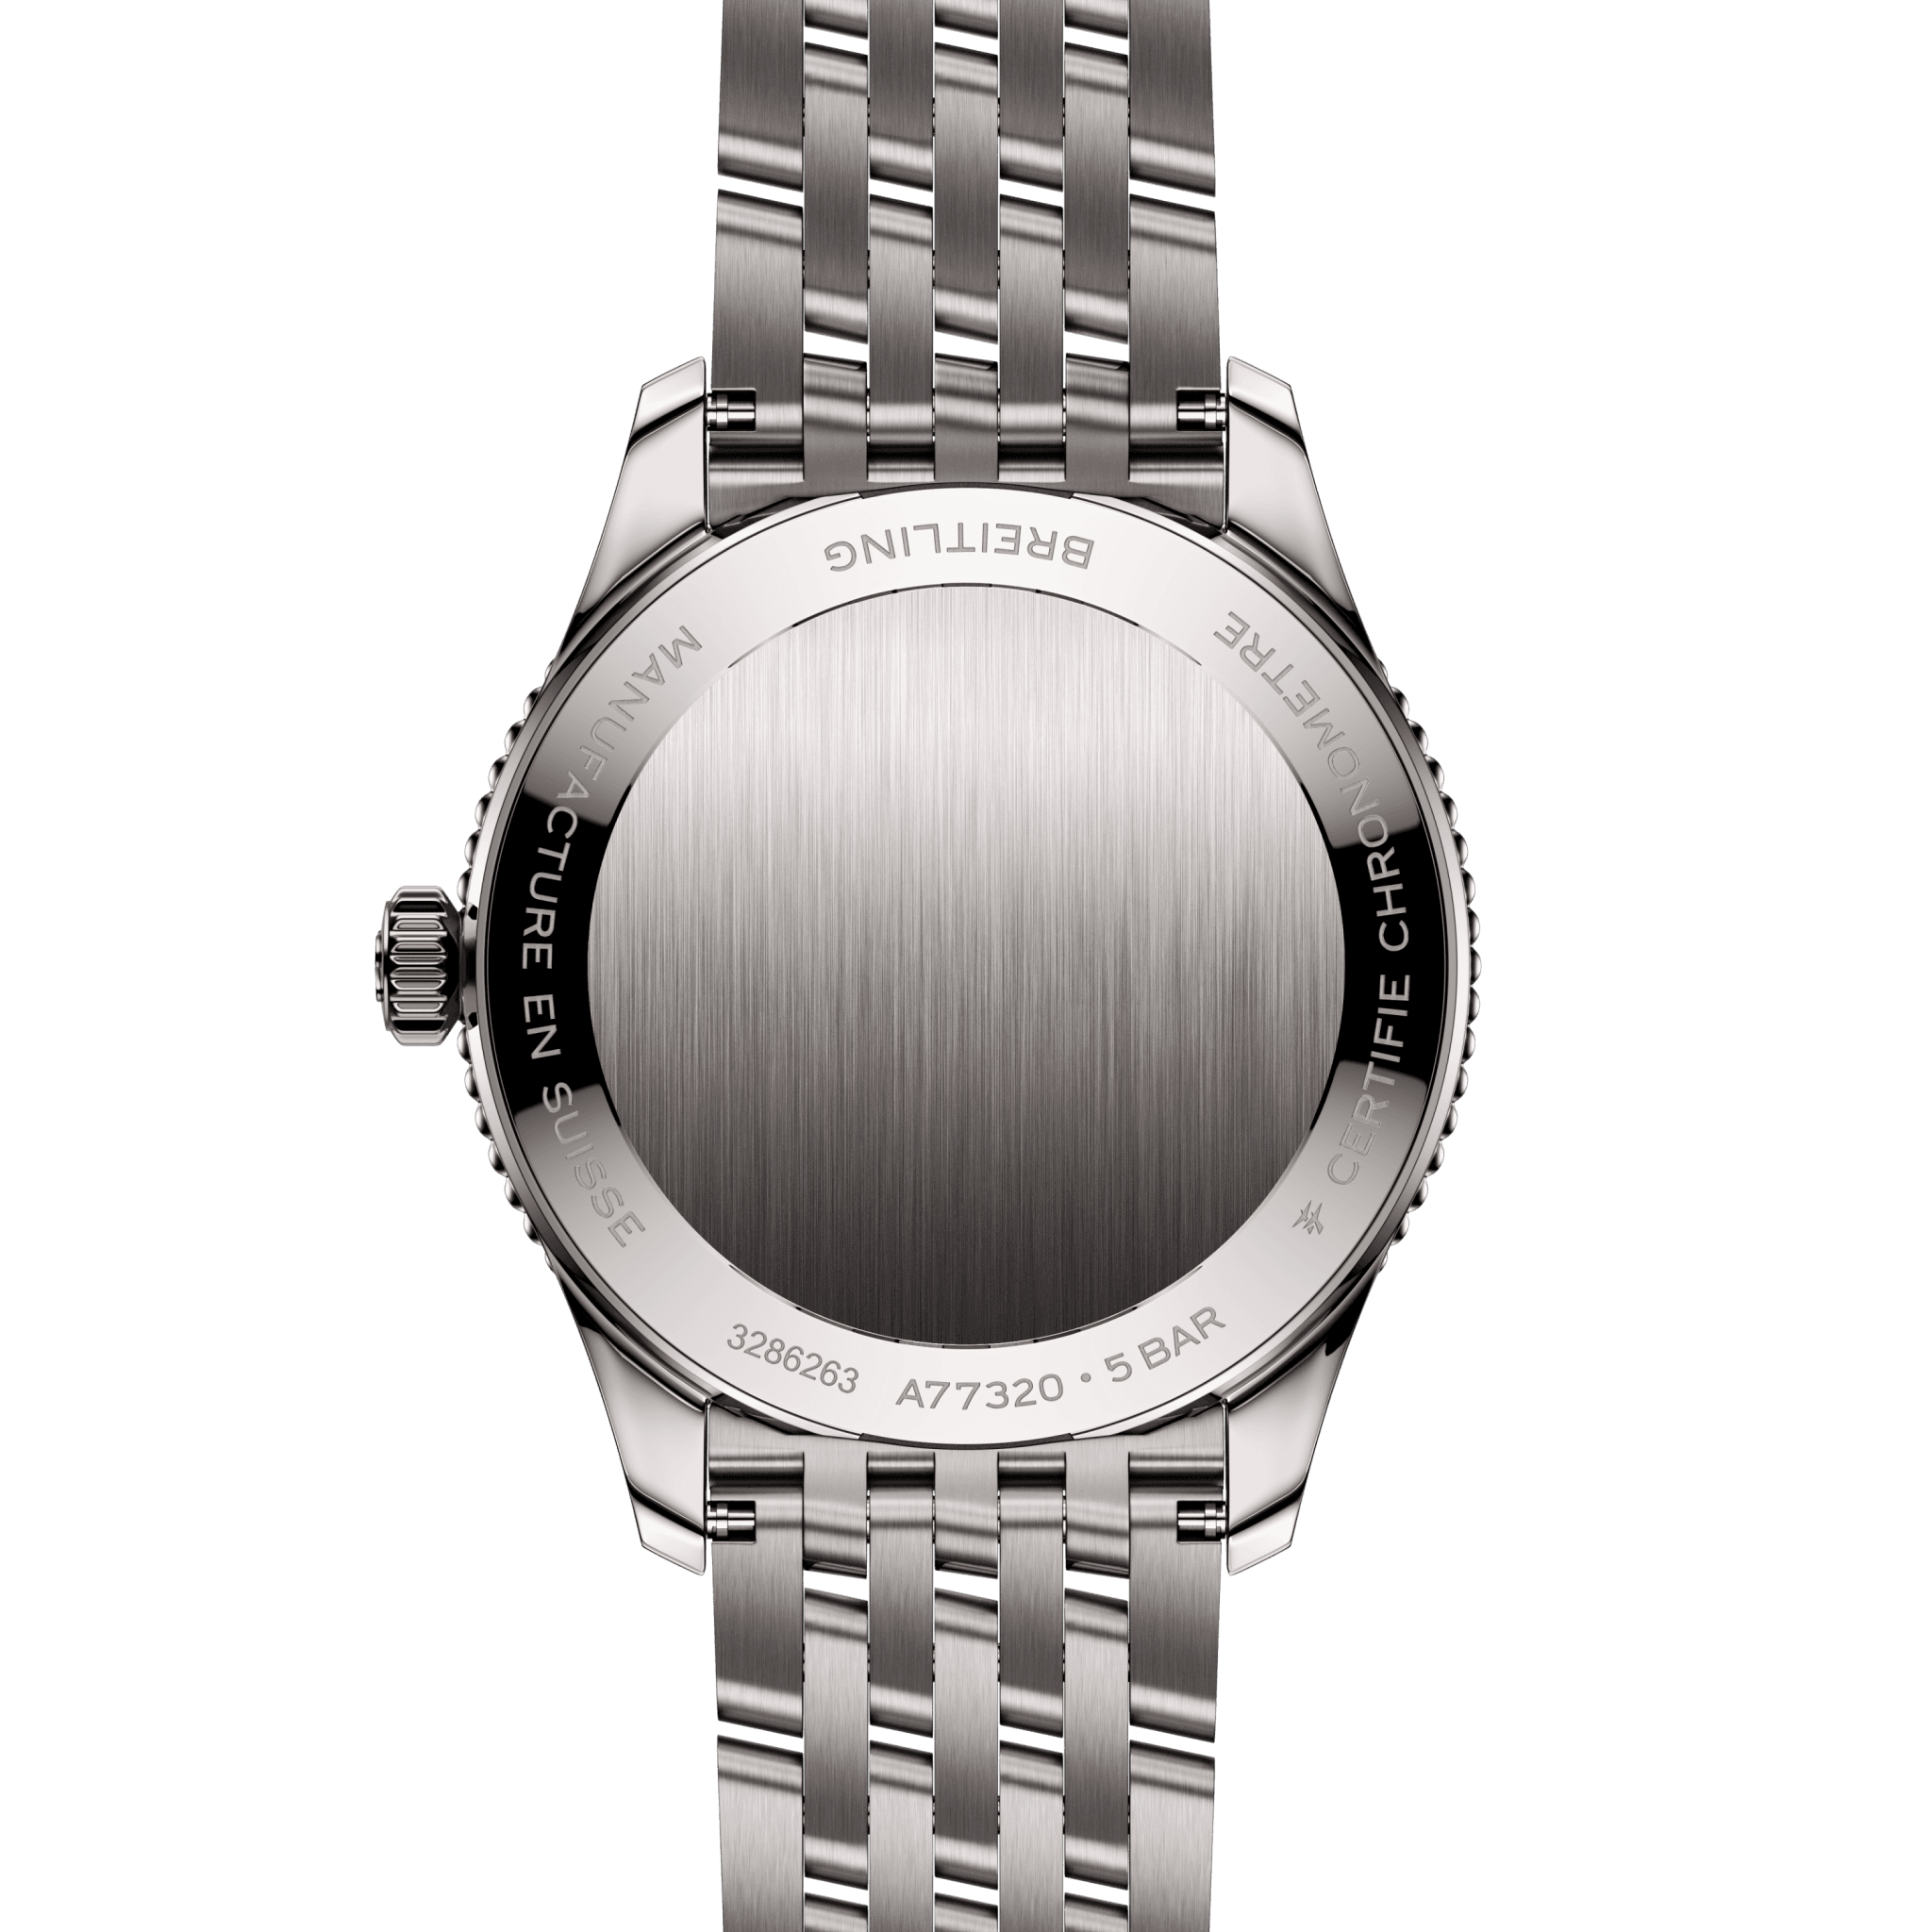 Breitling Navitimer 32 watch